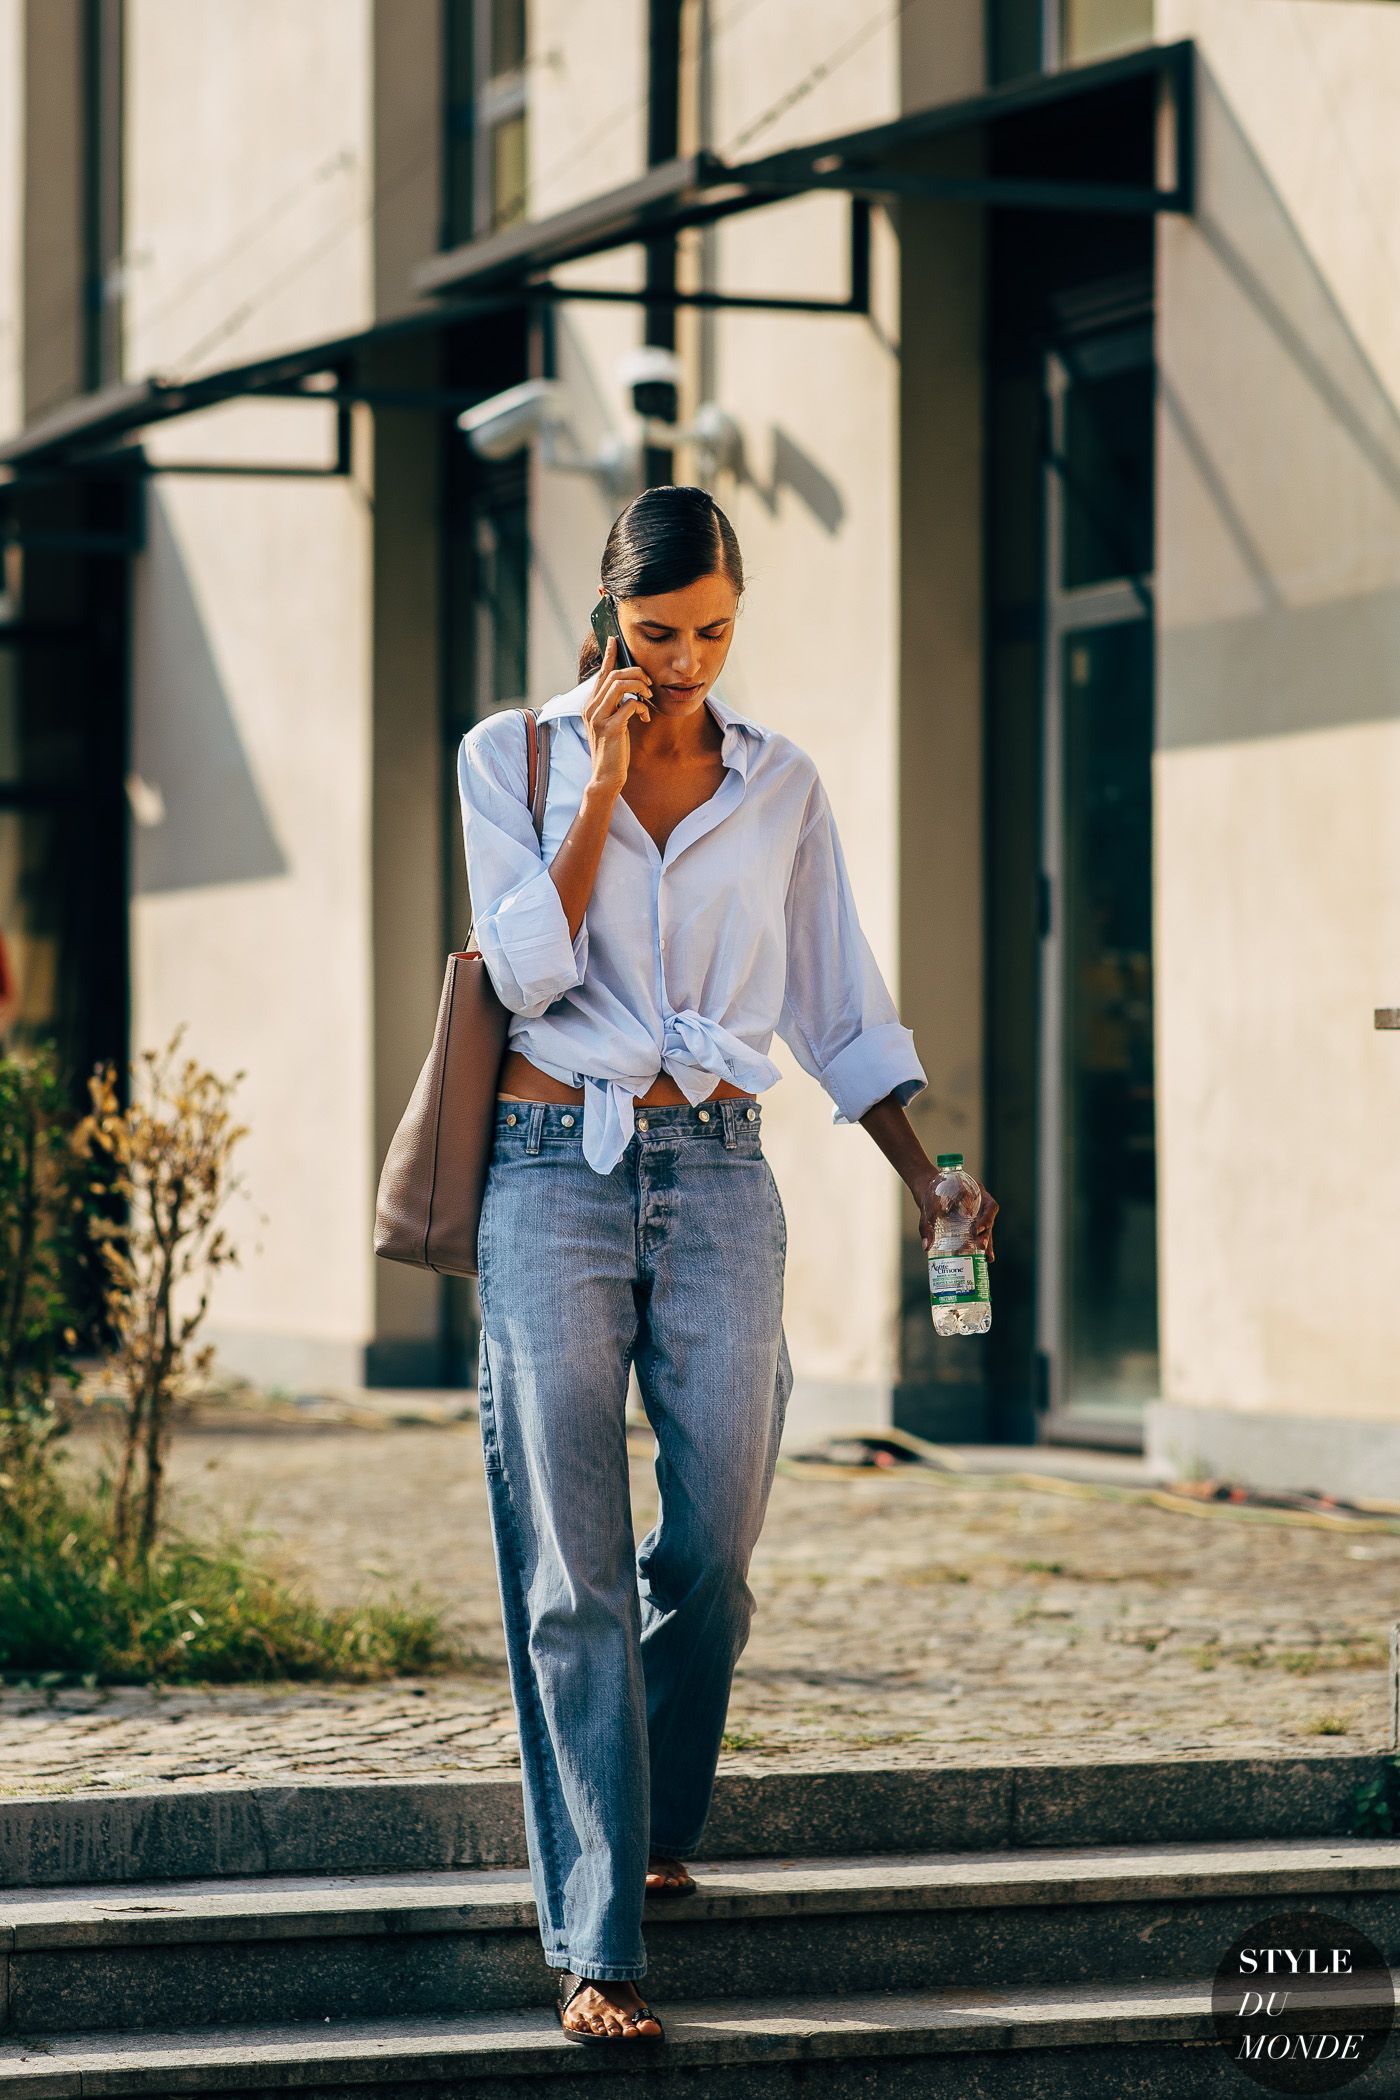 Milan SS 2019 Street Style - STYLE DU MONDE | Street Style Street Fashion Photos -   everyday style 2019